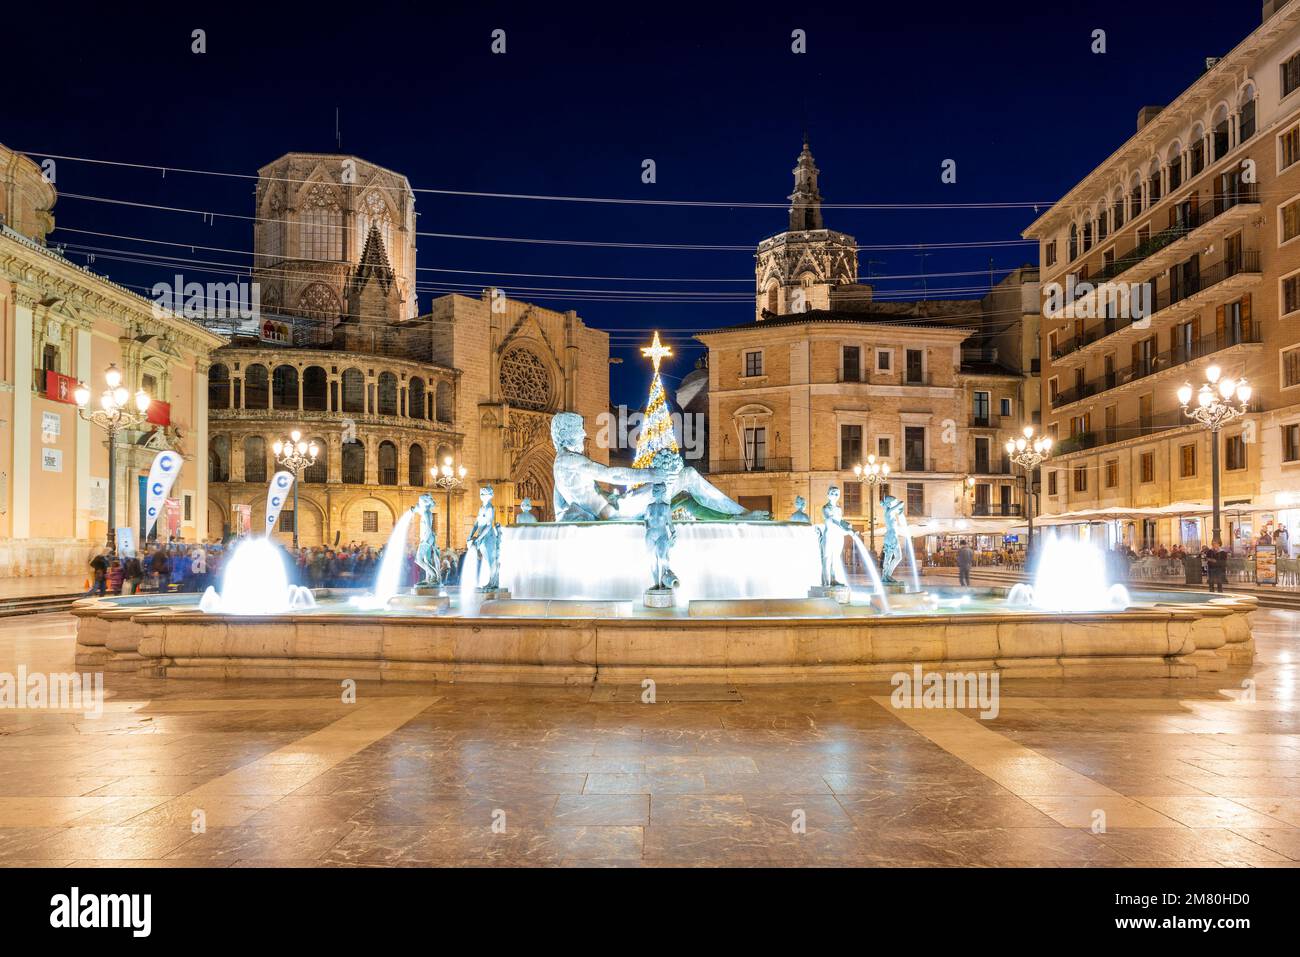 Plaza de la Virgen, Valence, Communauté Valencienne, Espagne Banque D'Images